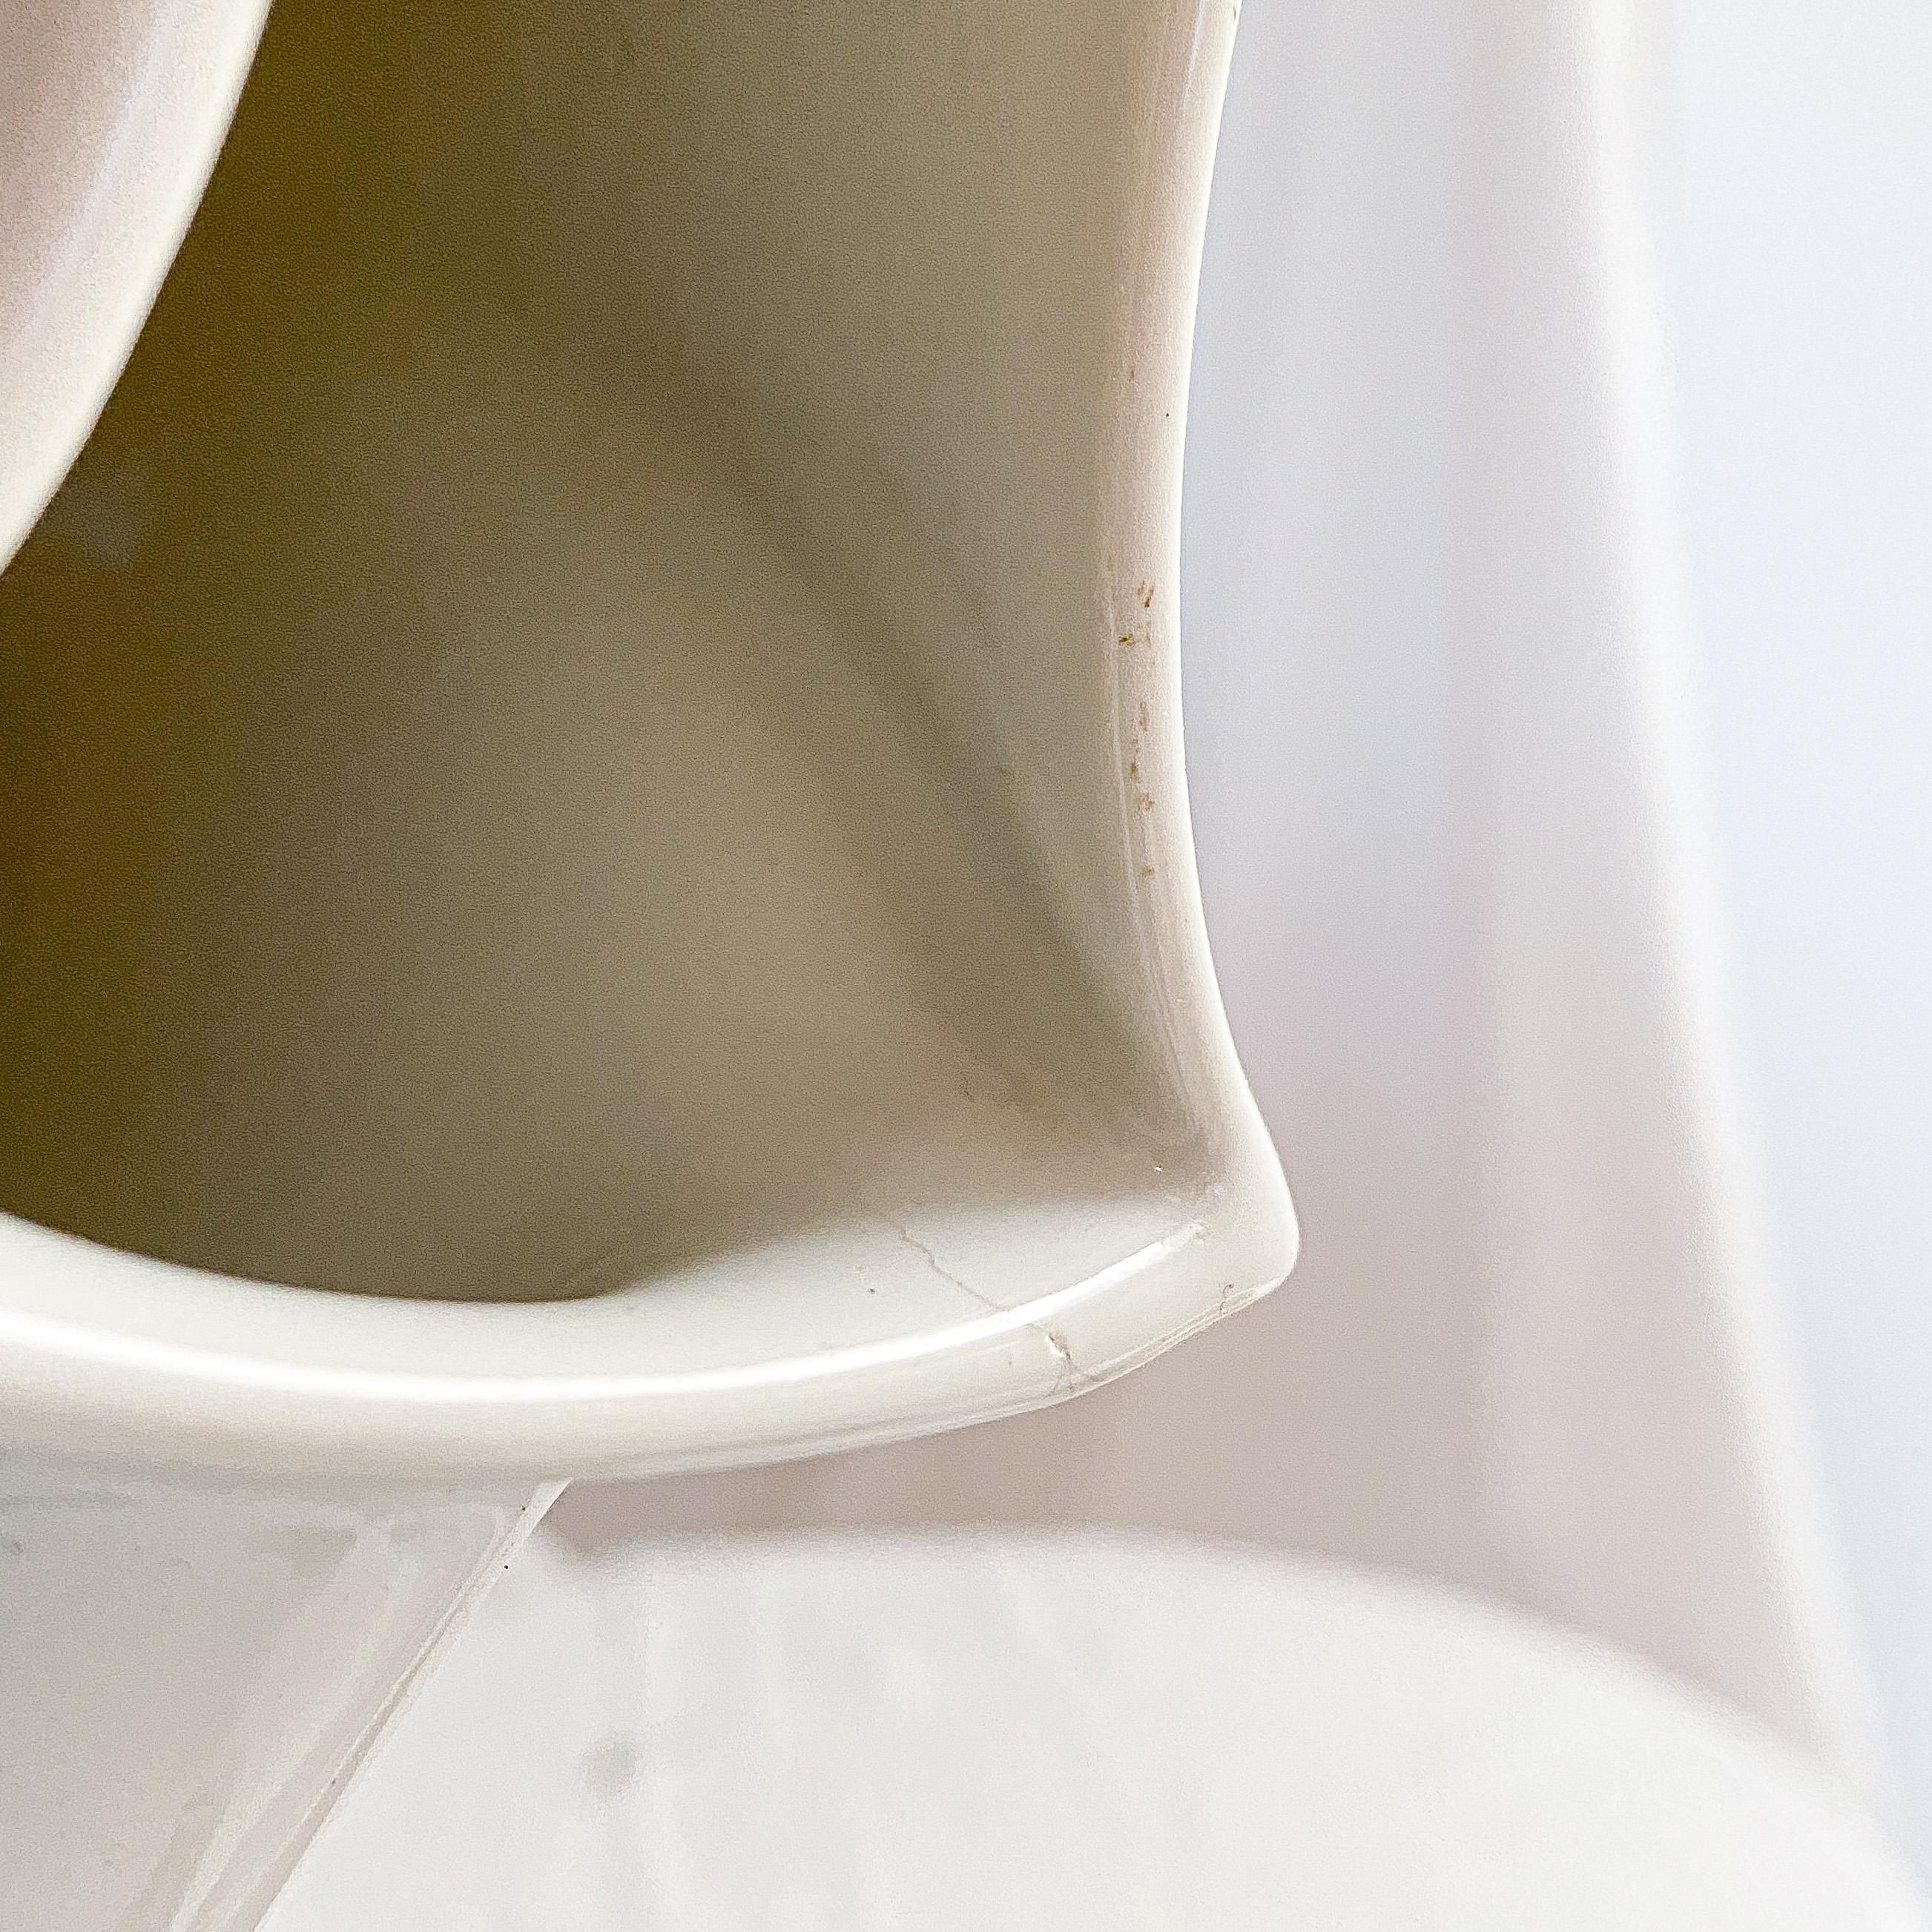 Dutch Modernist Constructivist Vase by Jan van der Vaart, minimal style For Sale 3